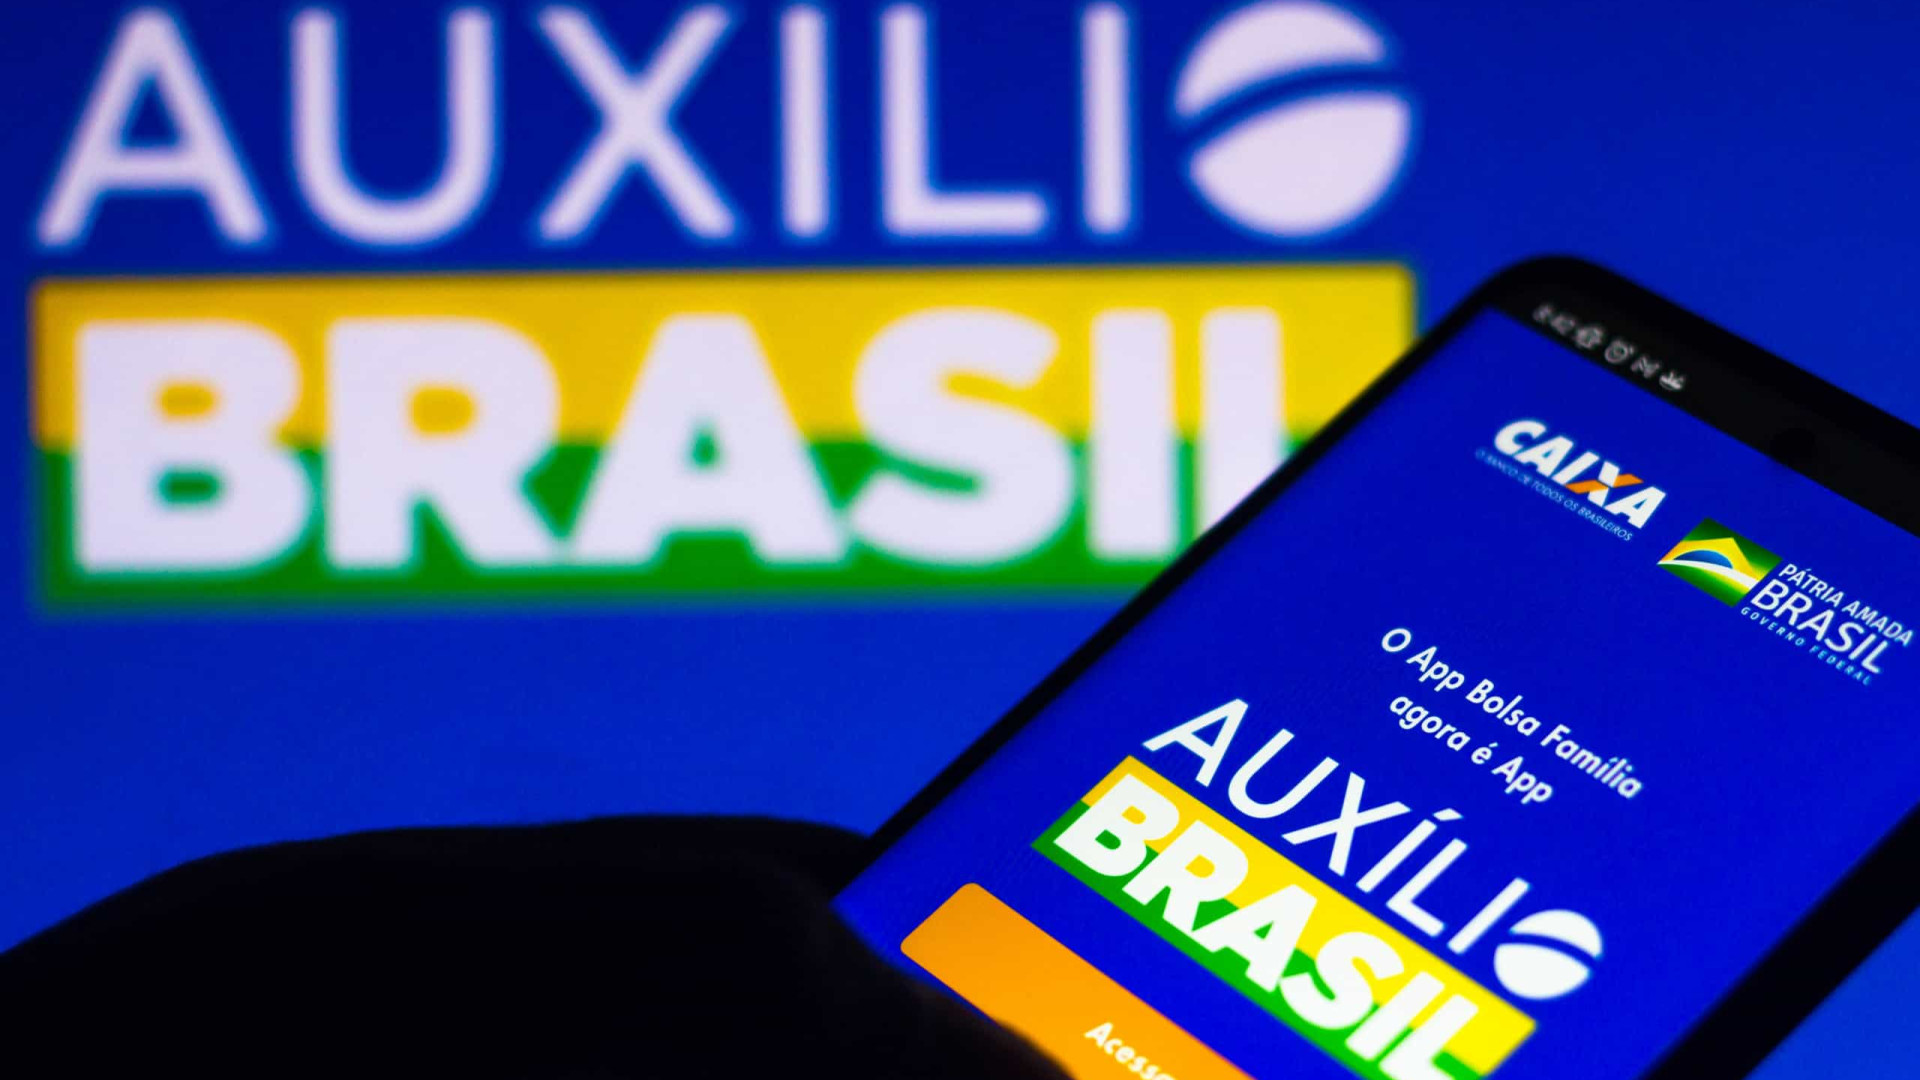 Auxílio Brasil de R$ 400 deve começar a ser pago em dezembro a 17 milhões de famílias